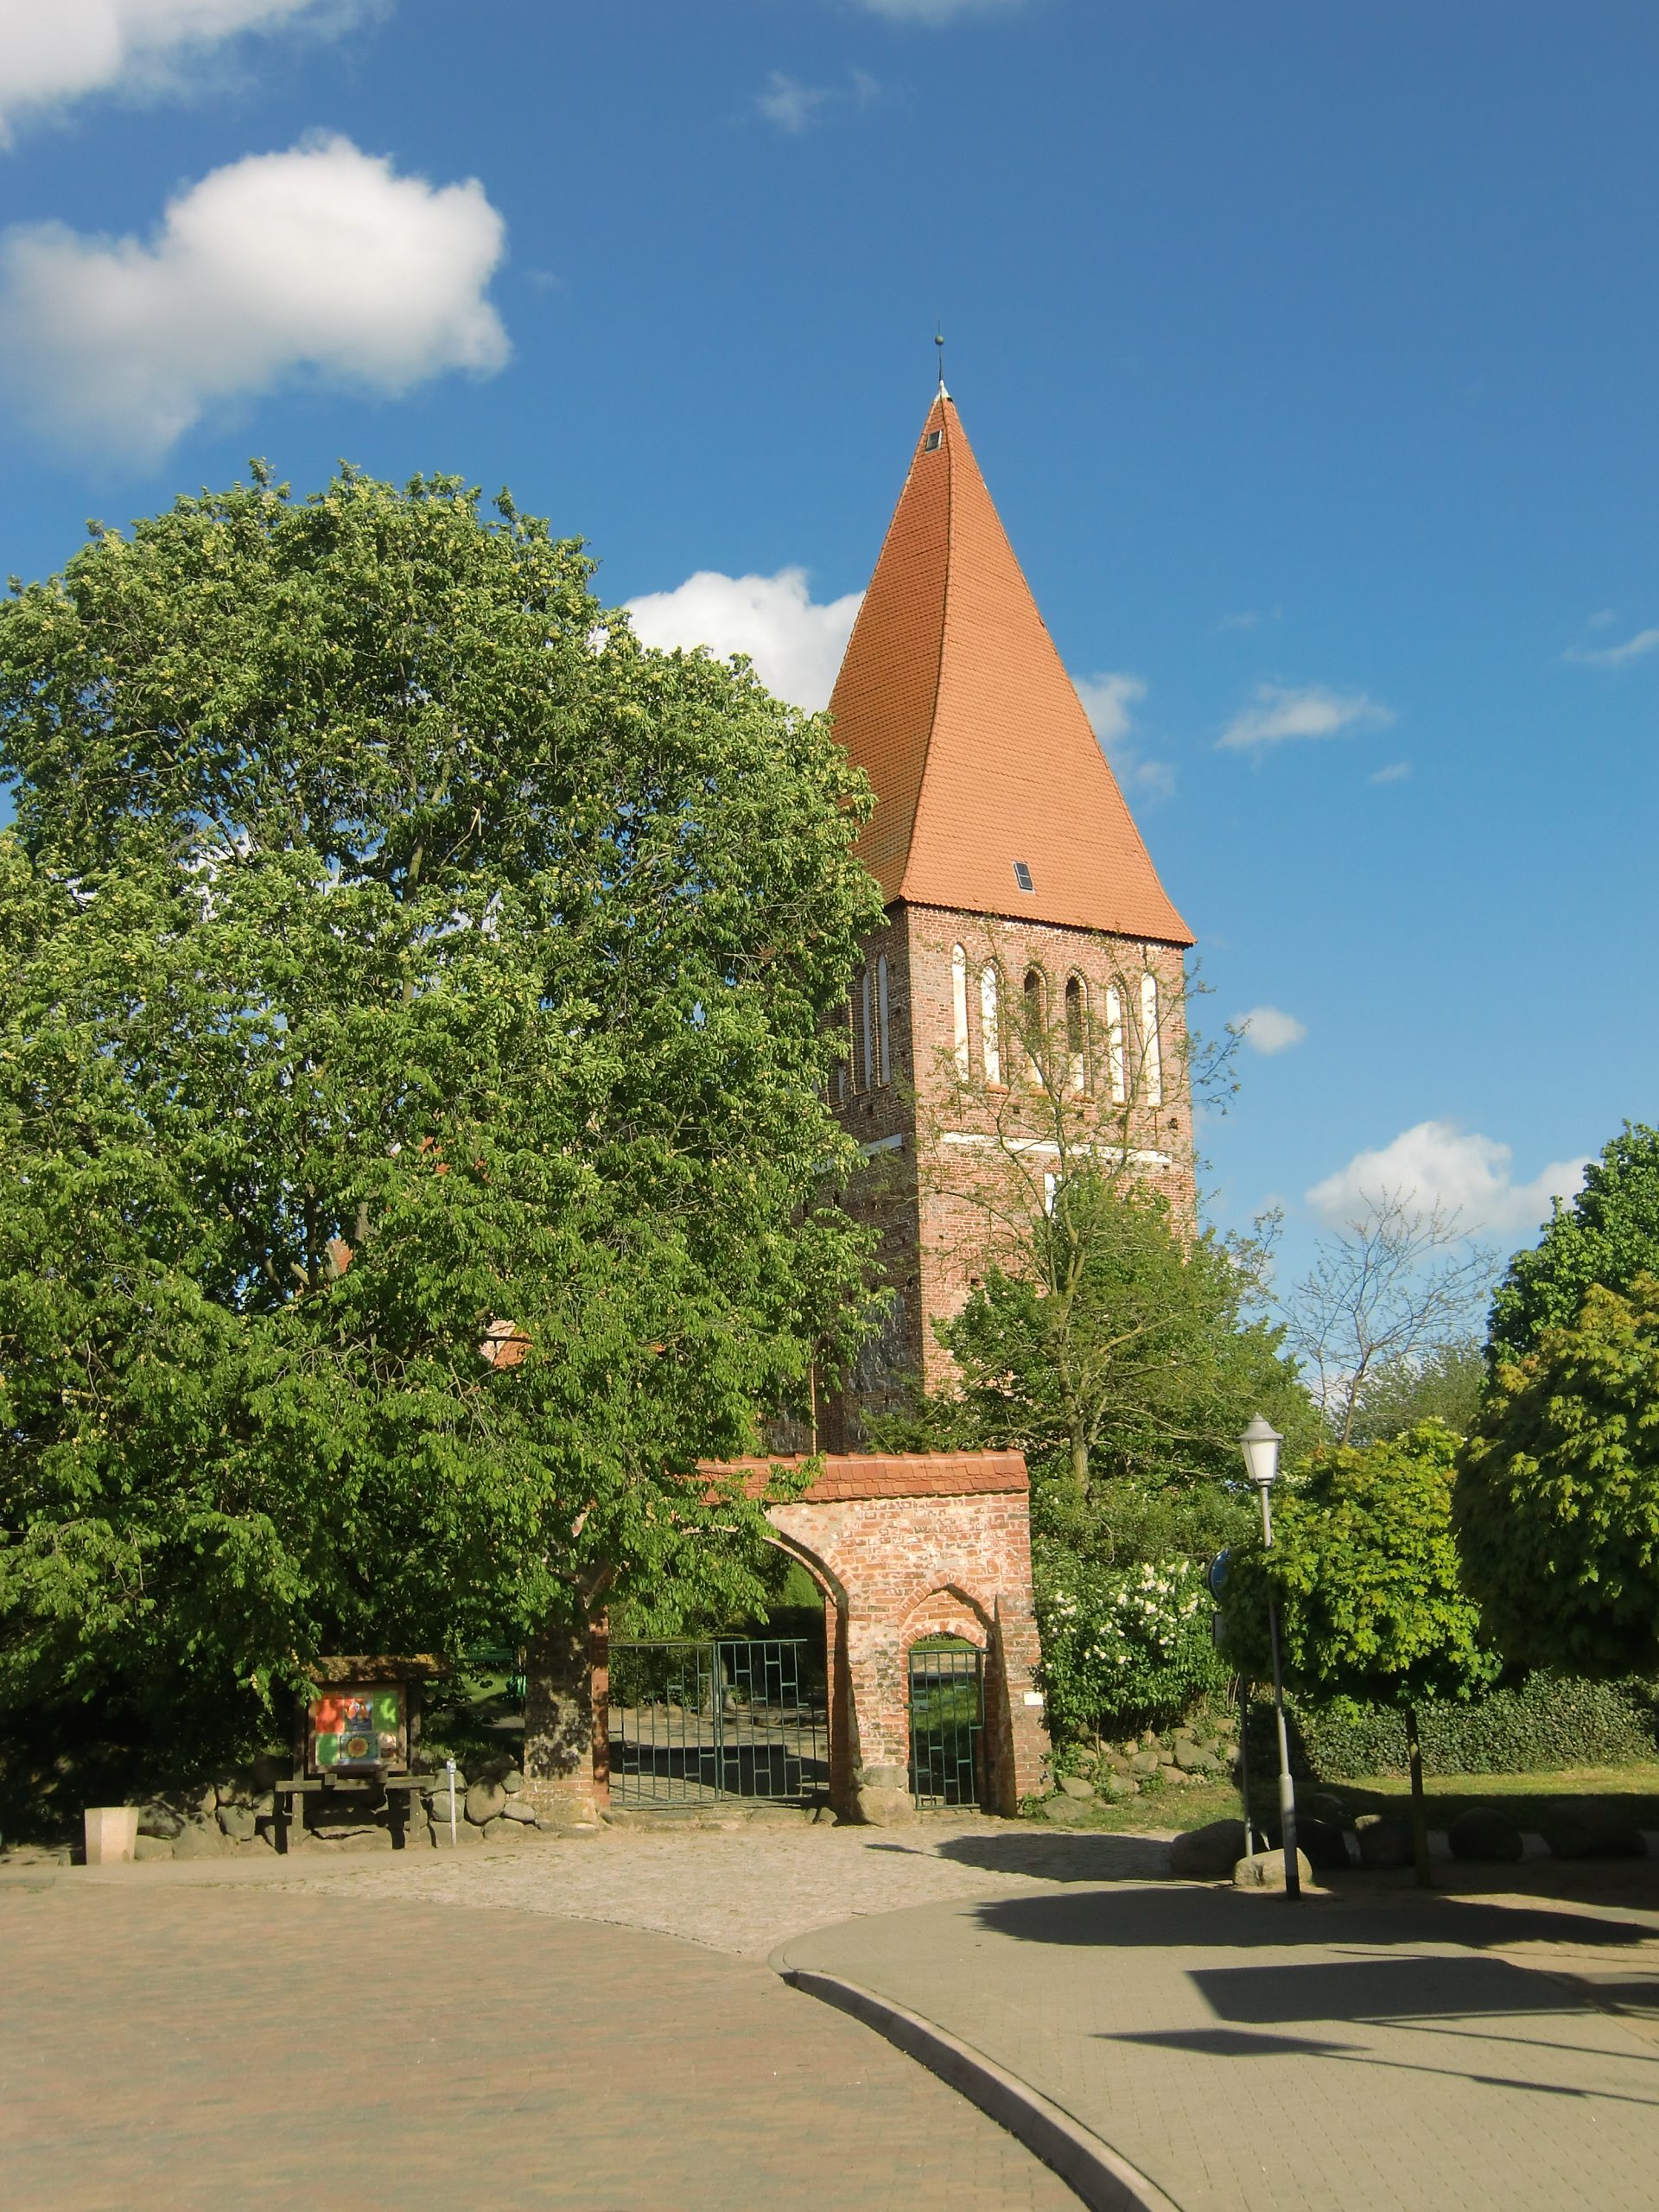 Kirche Horst